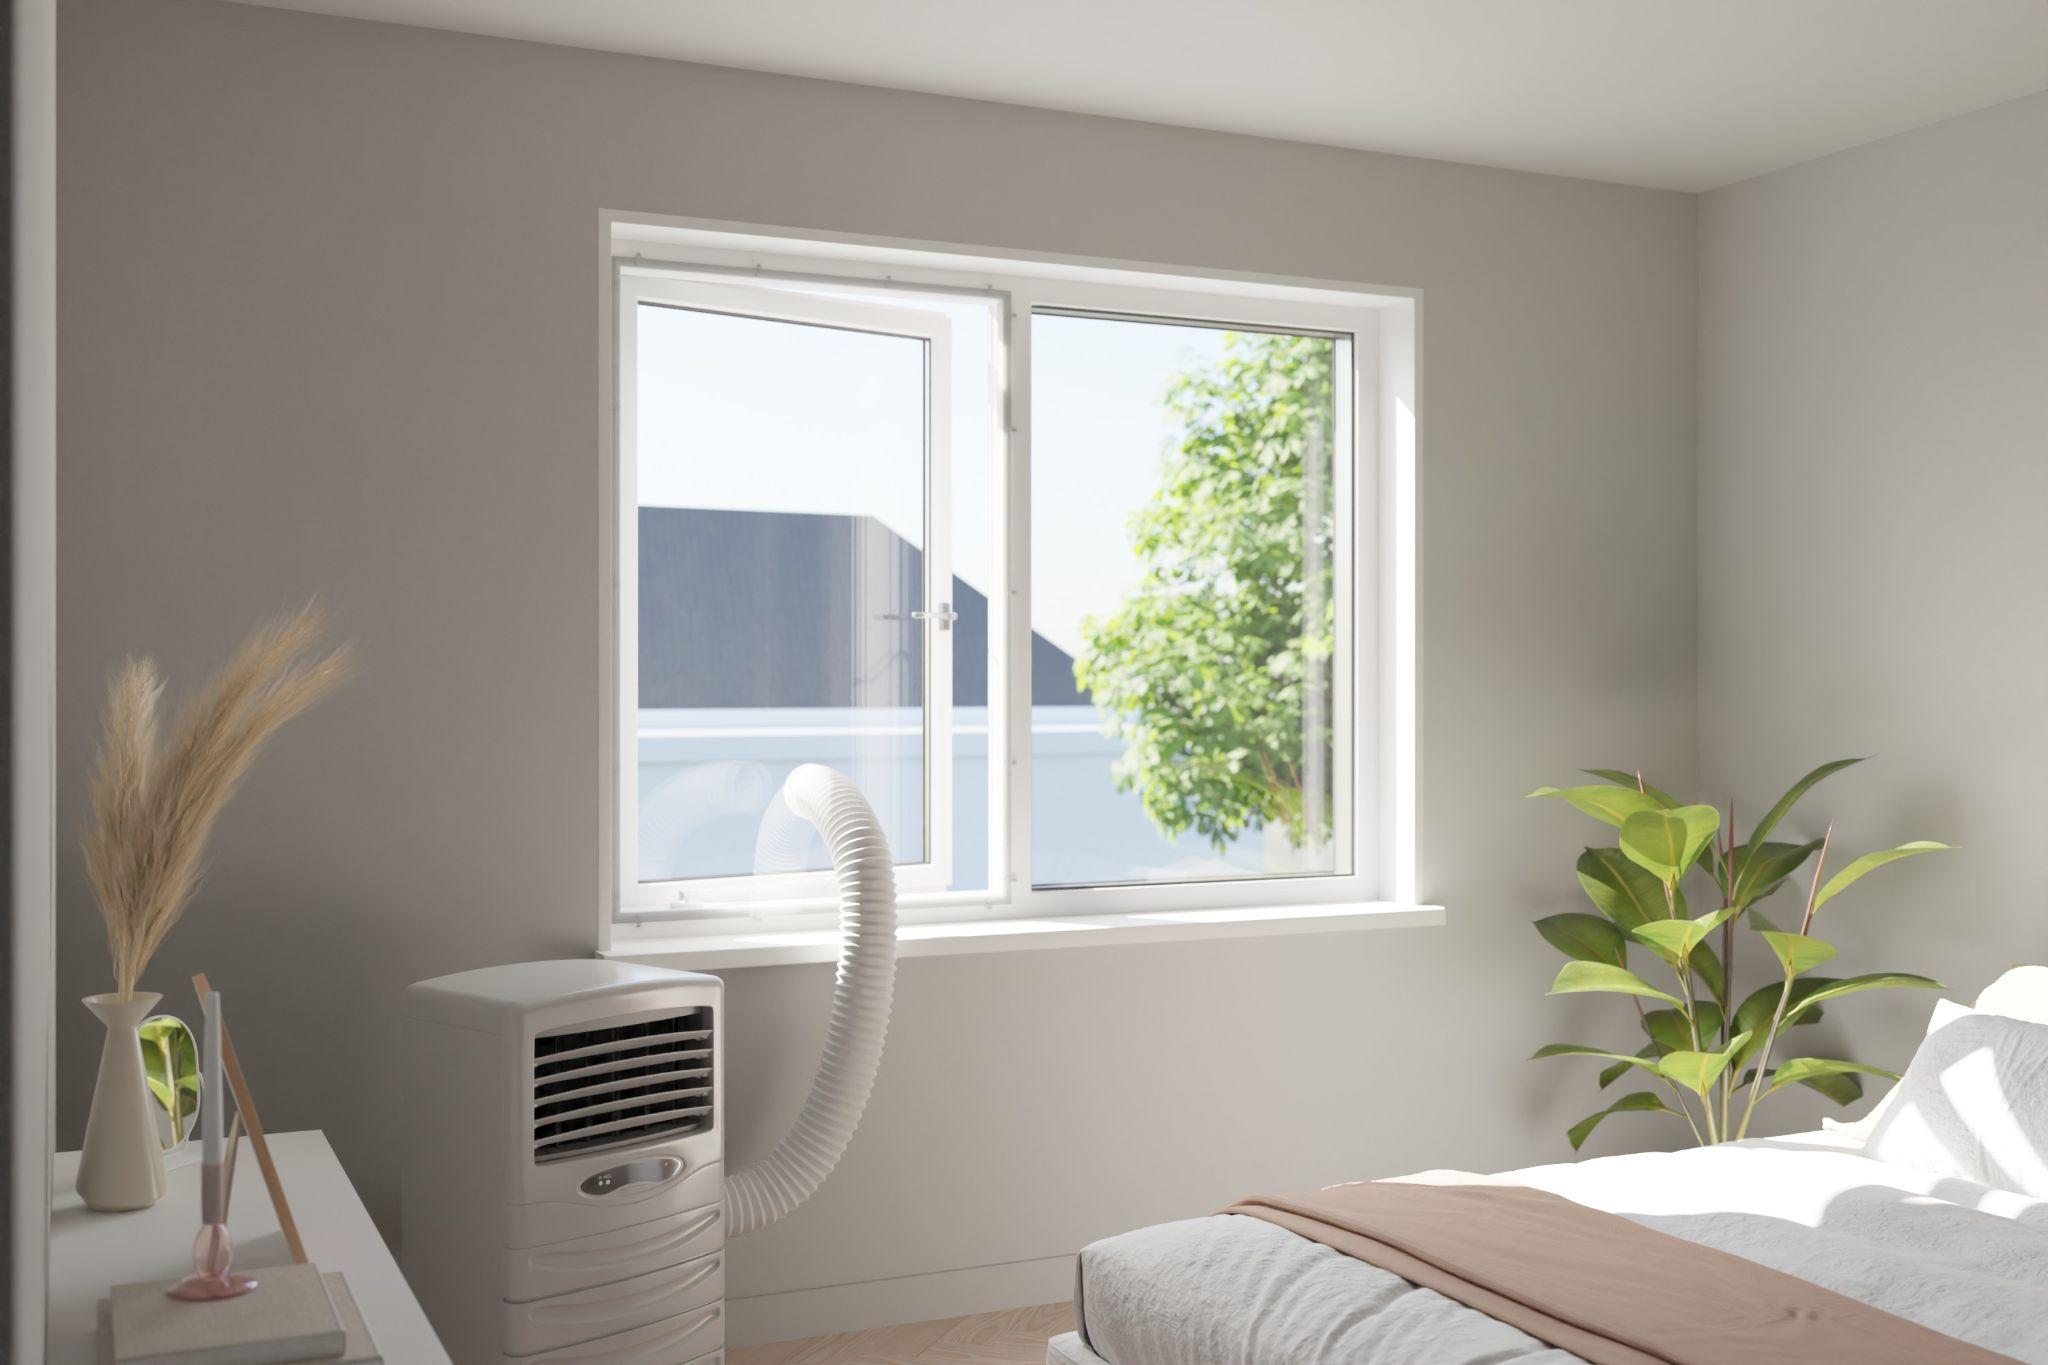 Fensterabdichtung für Klimaanlage selber bauen